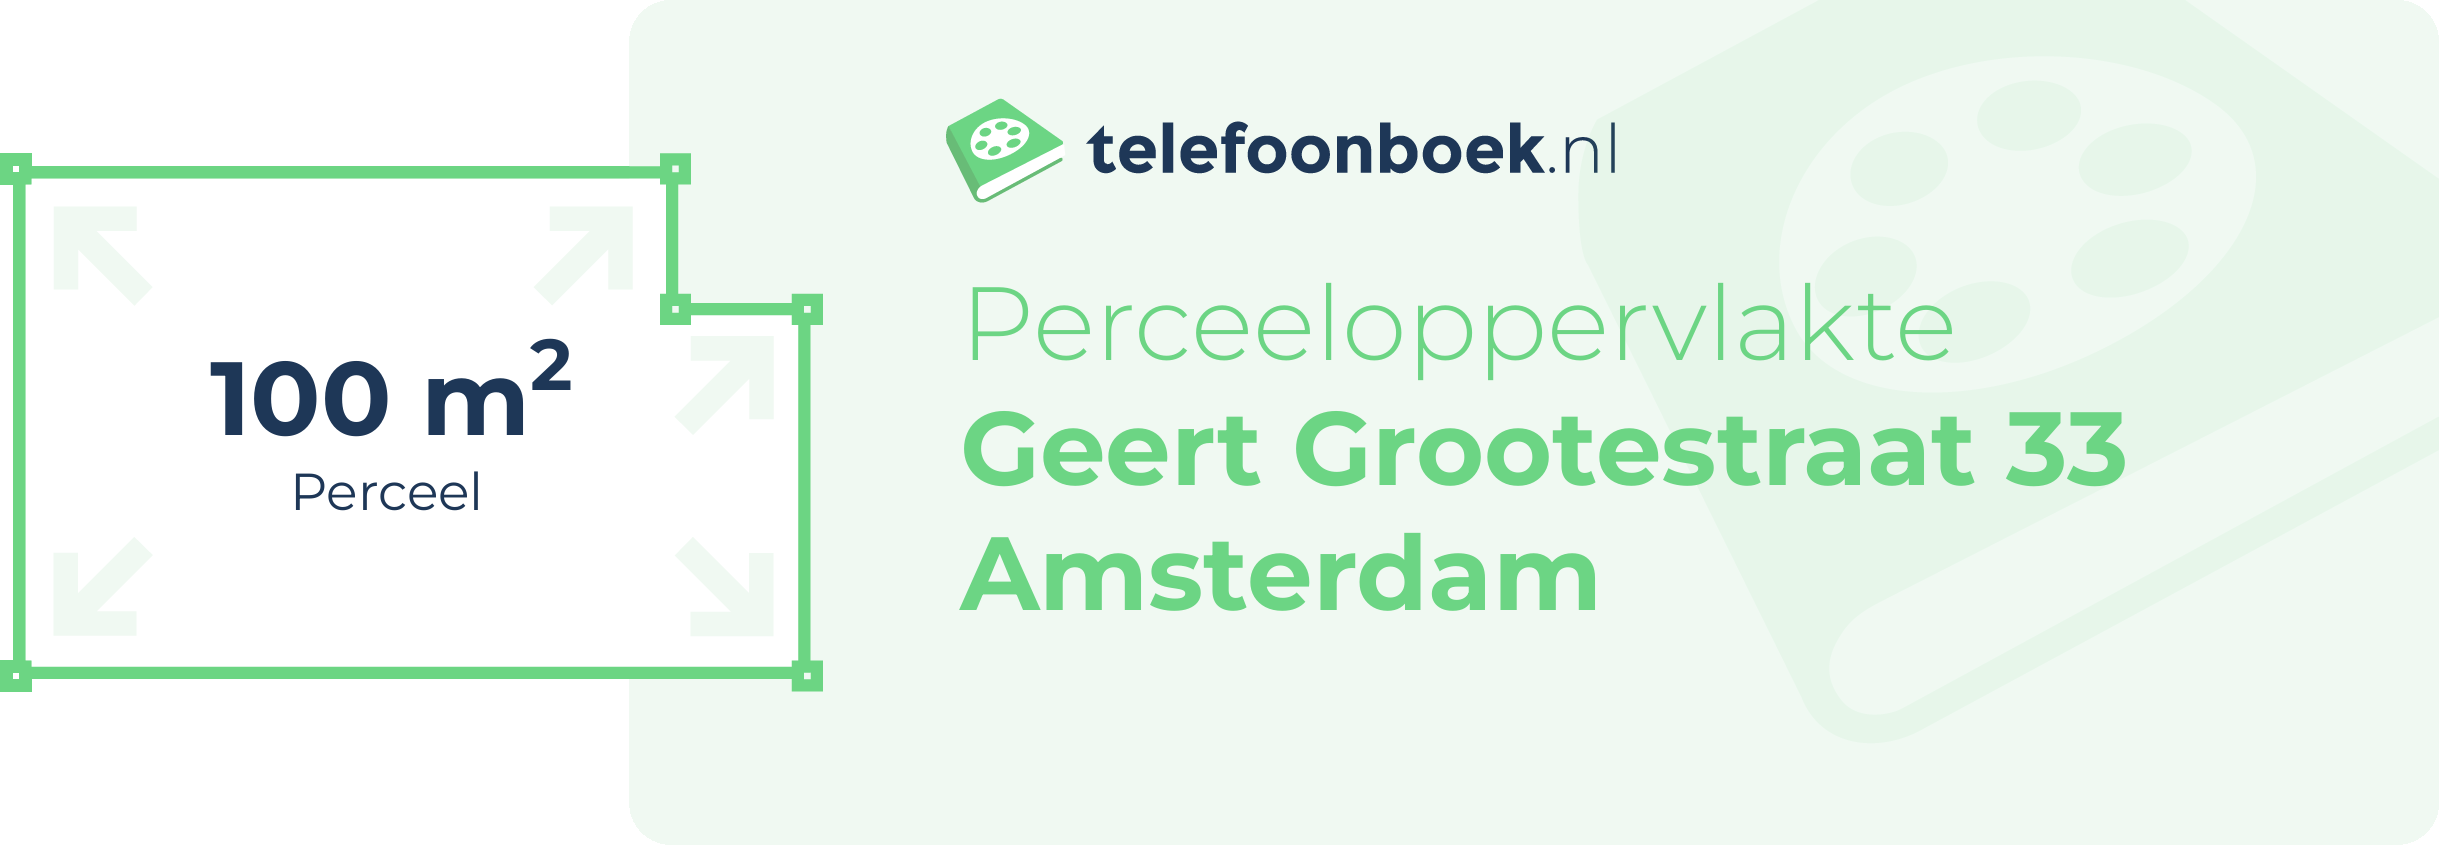 Perceeloppervlakte Geert Grootestraat 33 Amsterdam